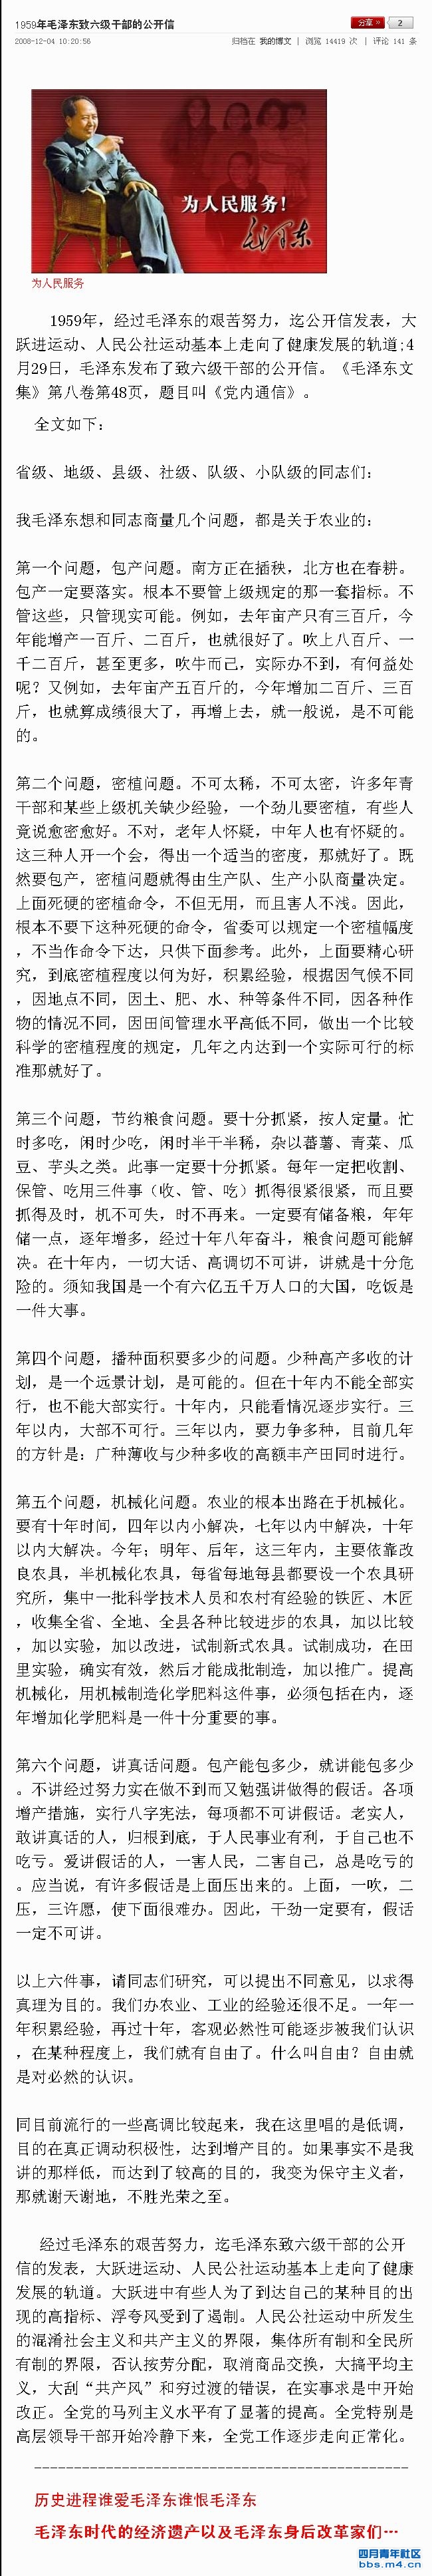 1959年毛泽东致六级干部的公开信.jpg